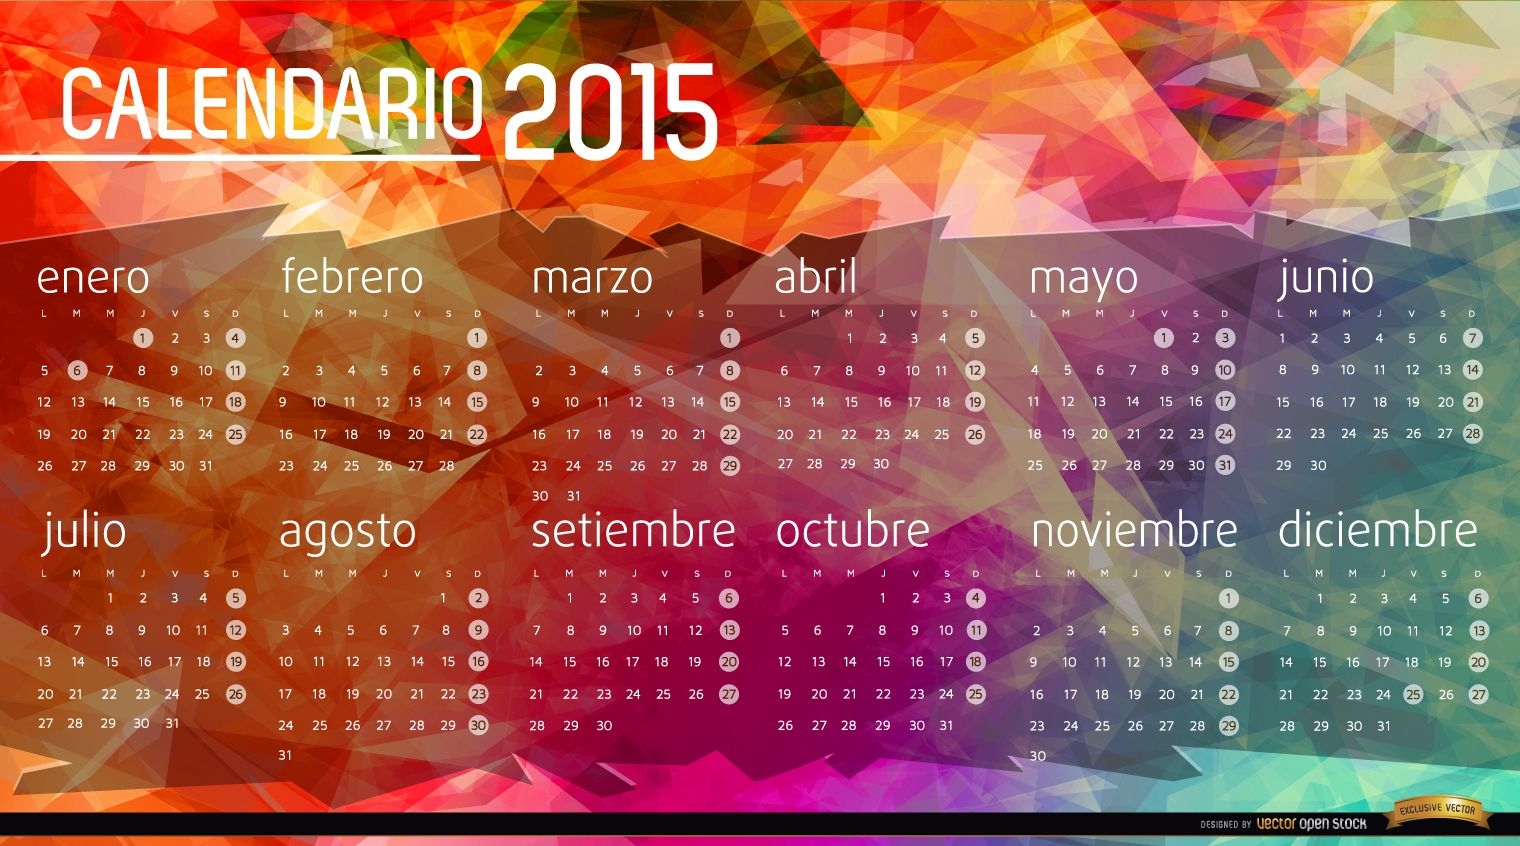 Fundo do polígono do calendário 2015 espanhol